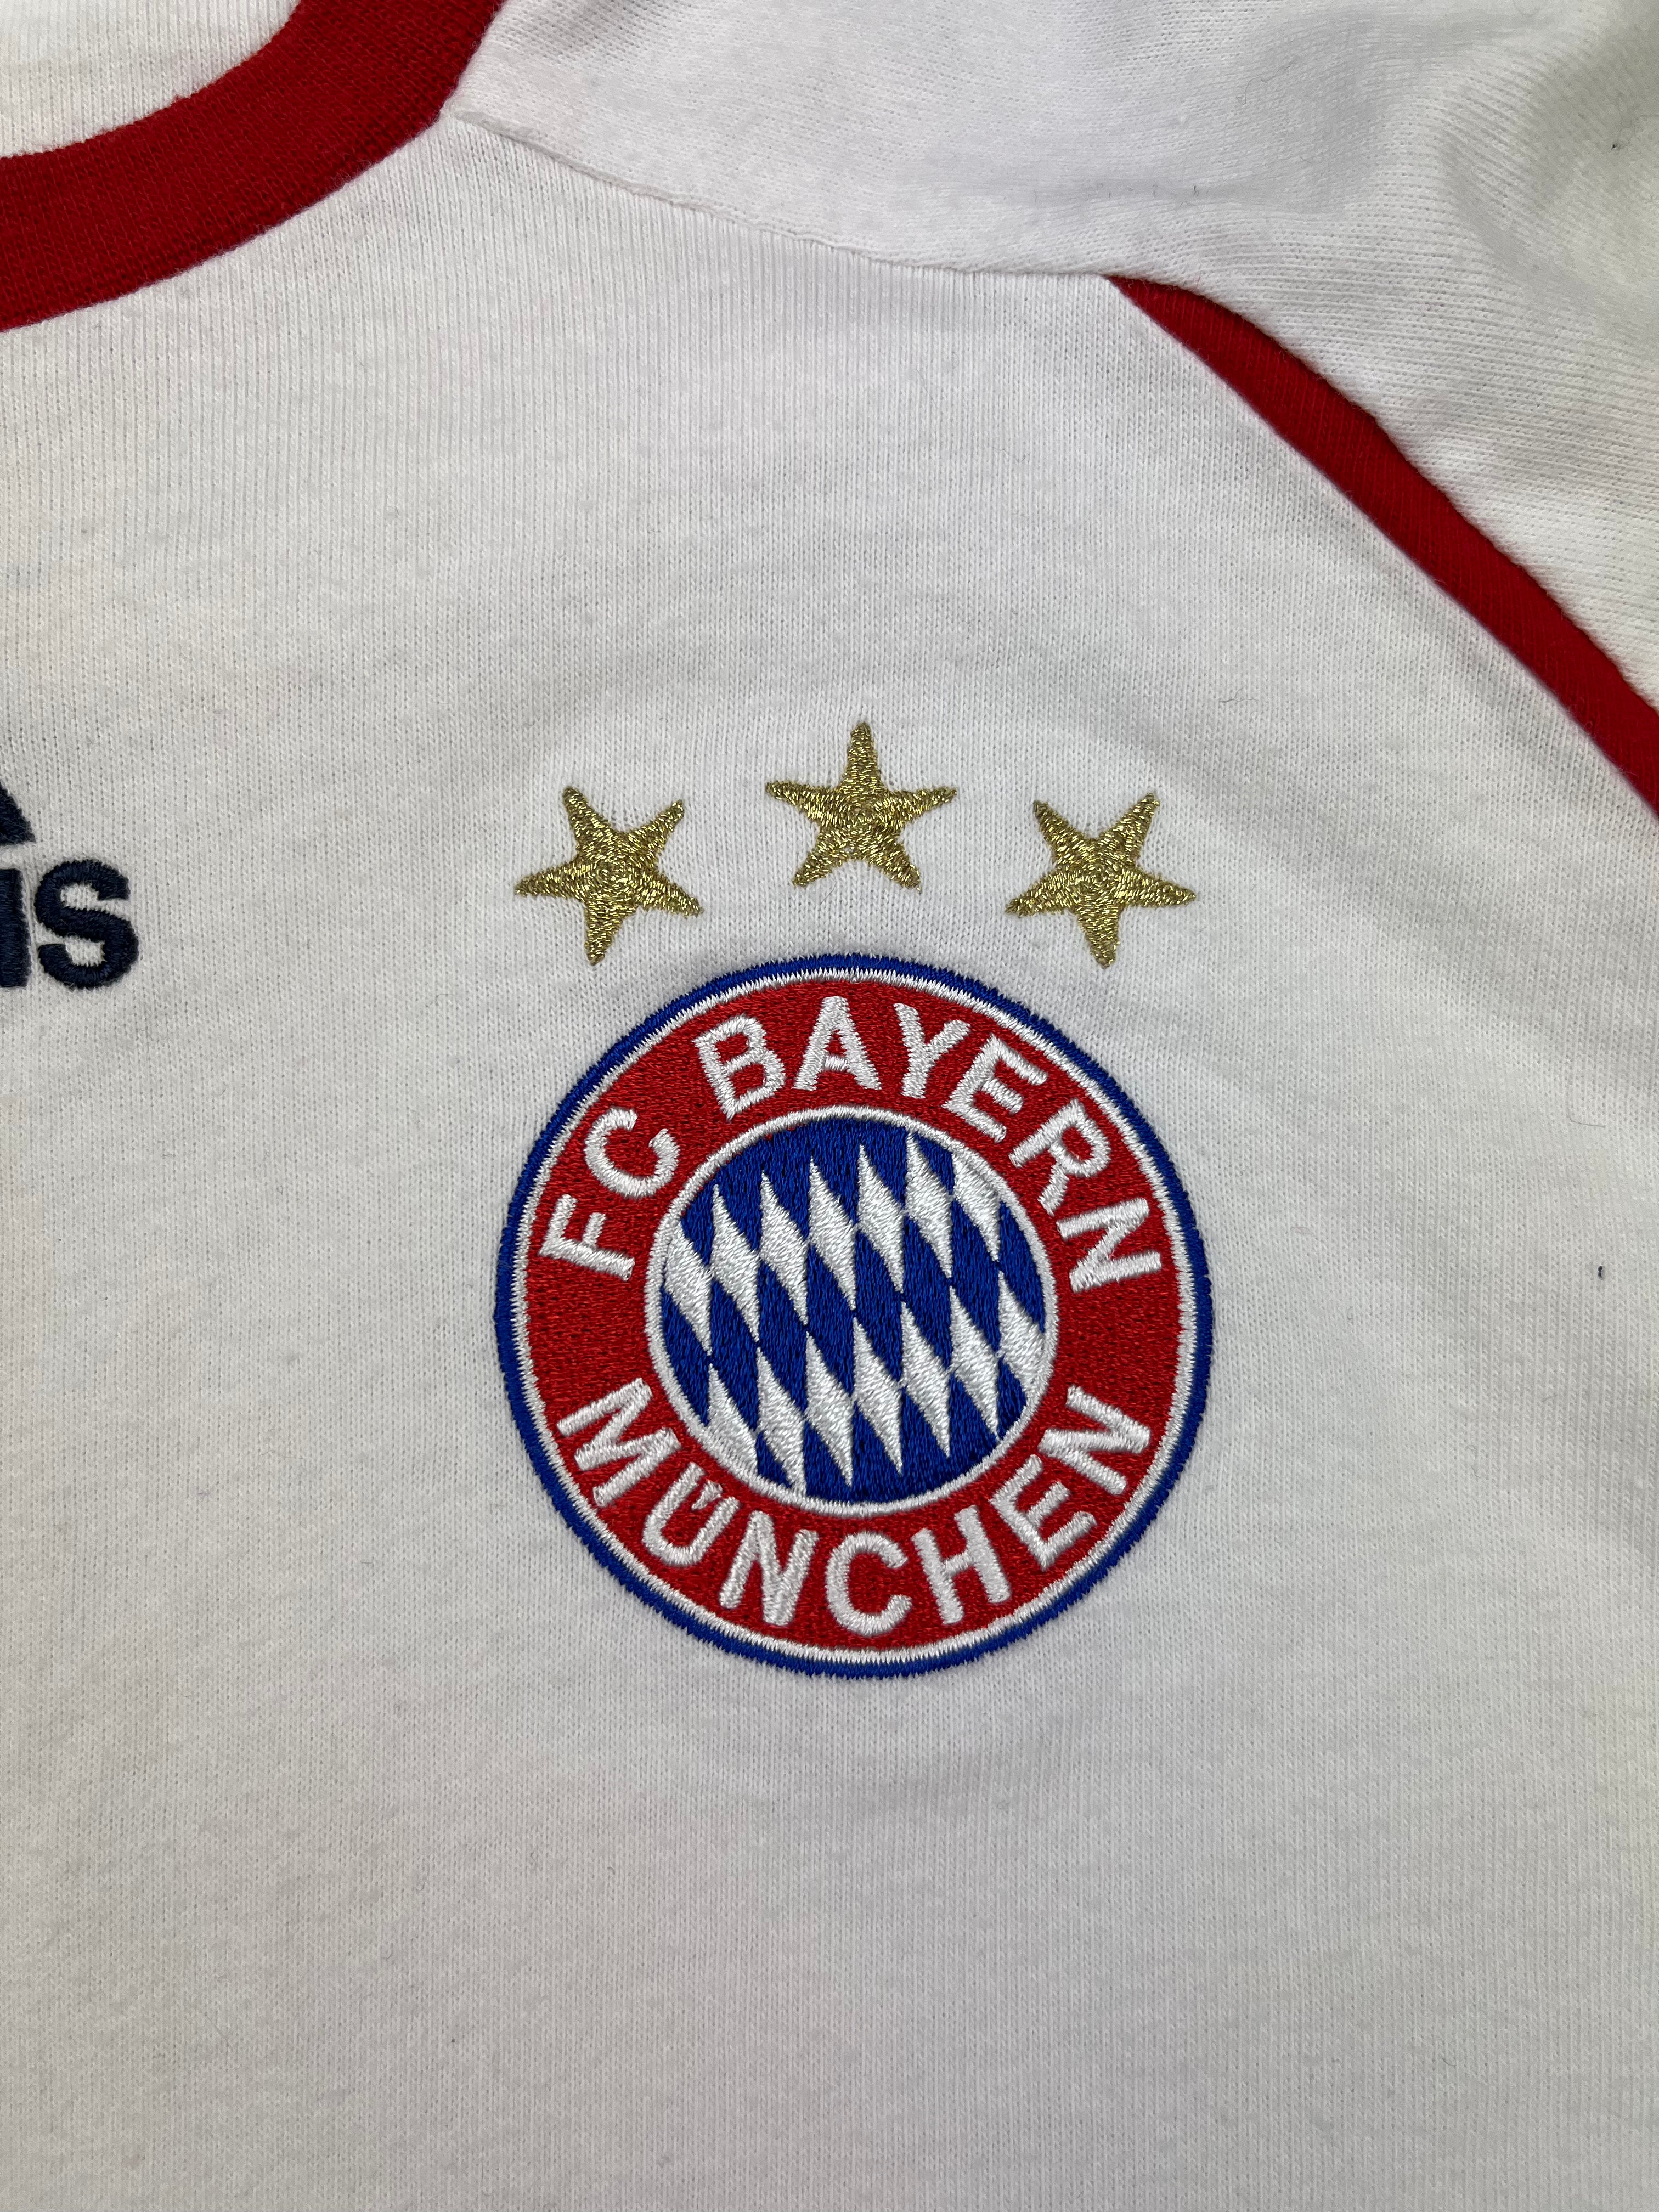 2006/07 Bayern Munich Training Shirt (S) 9/10